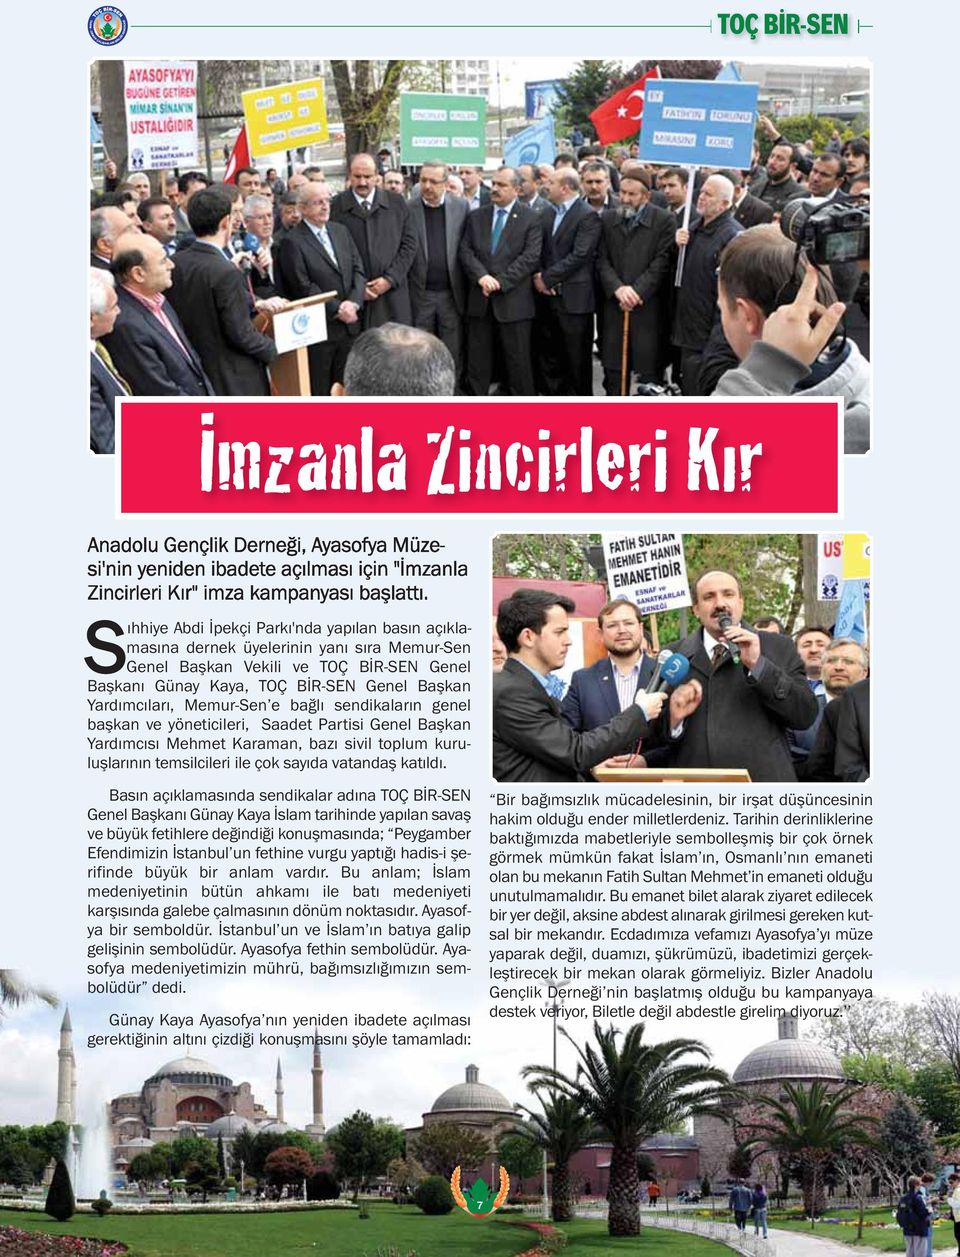 Memur-Sen e bağlı sendikaların genel başkan ve yöneticileri, Saadet Partisi Genel Başkan Yardımcısı Mehmet Karaman, bazı sivil toplum kuruluşlarının temsilcileri ile çok sayıda vatandaş katıldı.